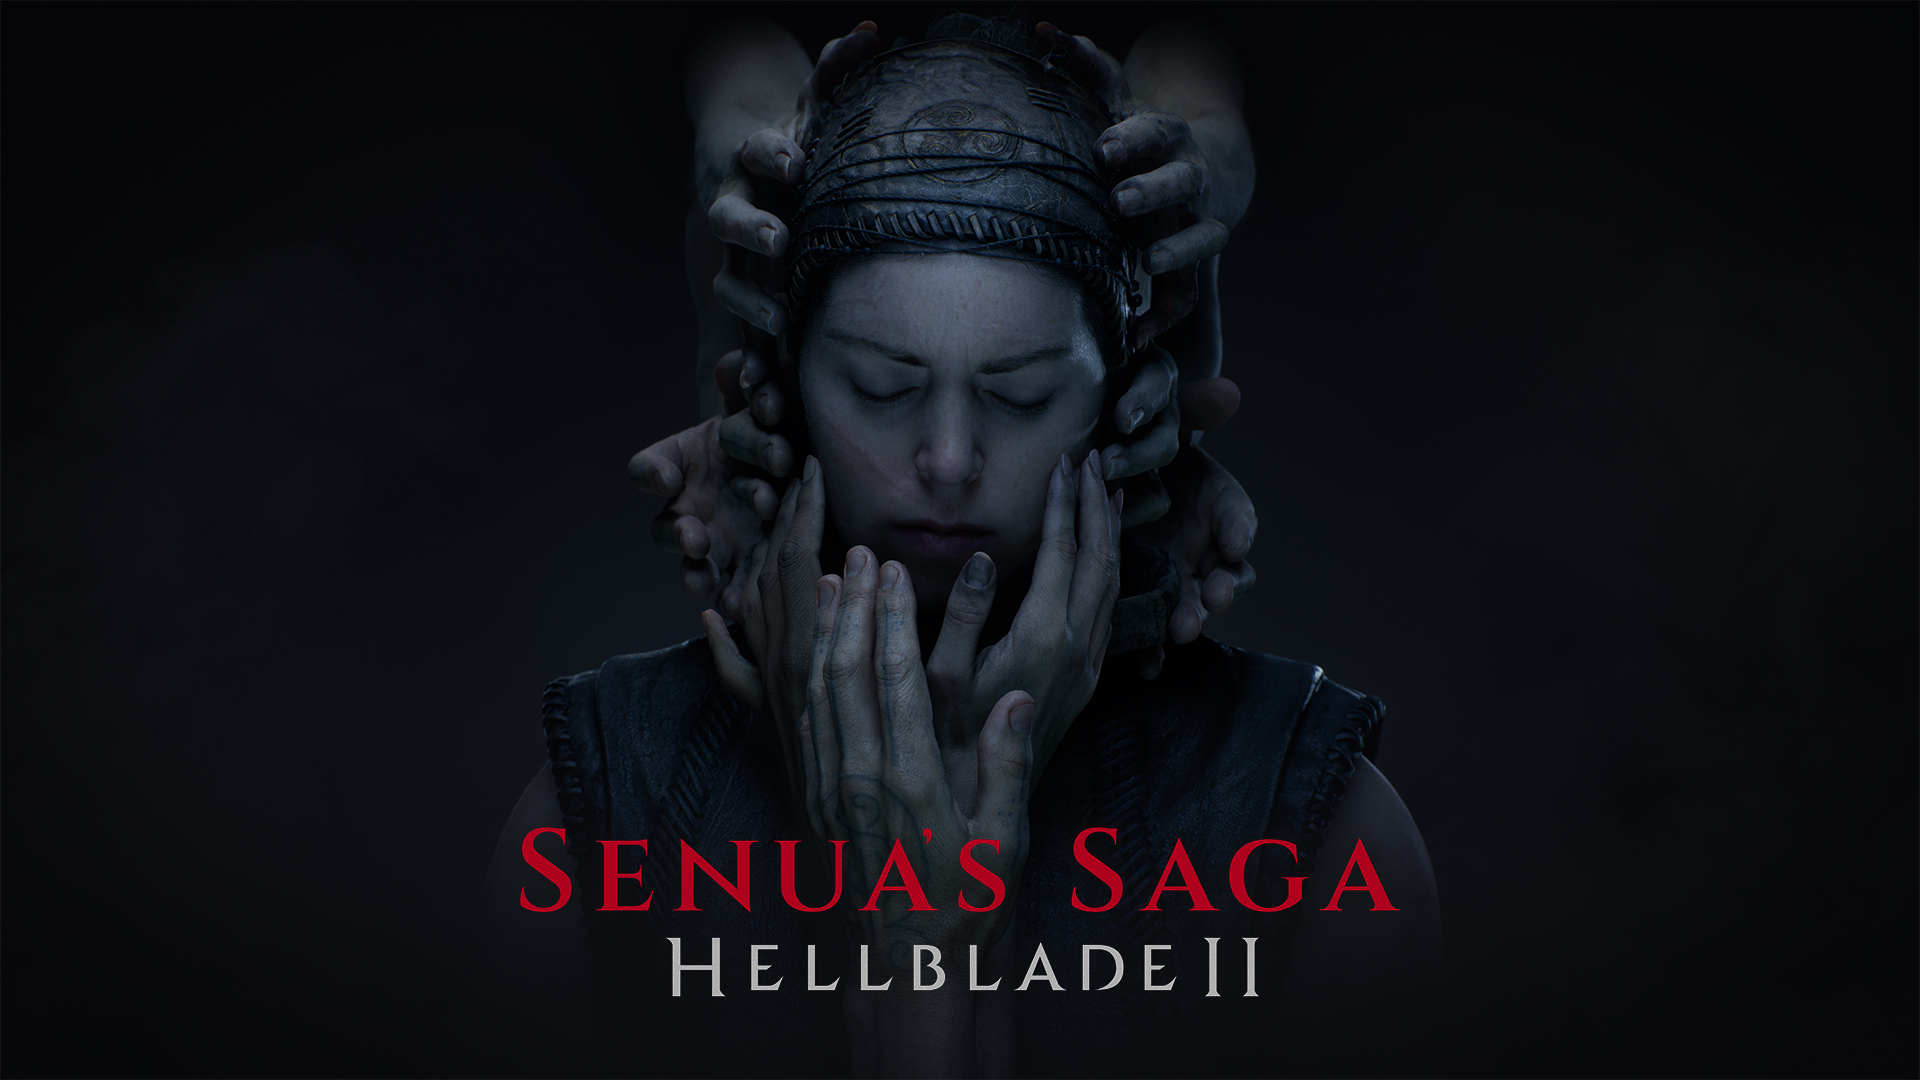 Senua's Saga: Hellblade 2 auf Xbox Developer_Direct: einige Details zur Entwicklung und zum Gameplay sowie ein bestätigter Veröffentlichungstermin - 21. Mai